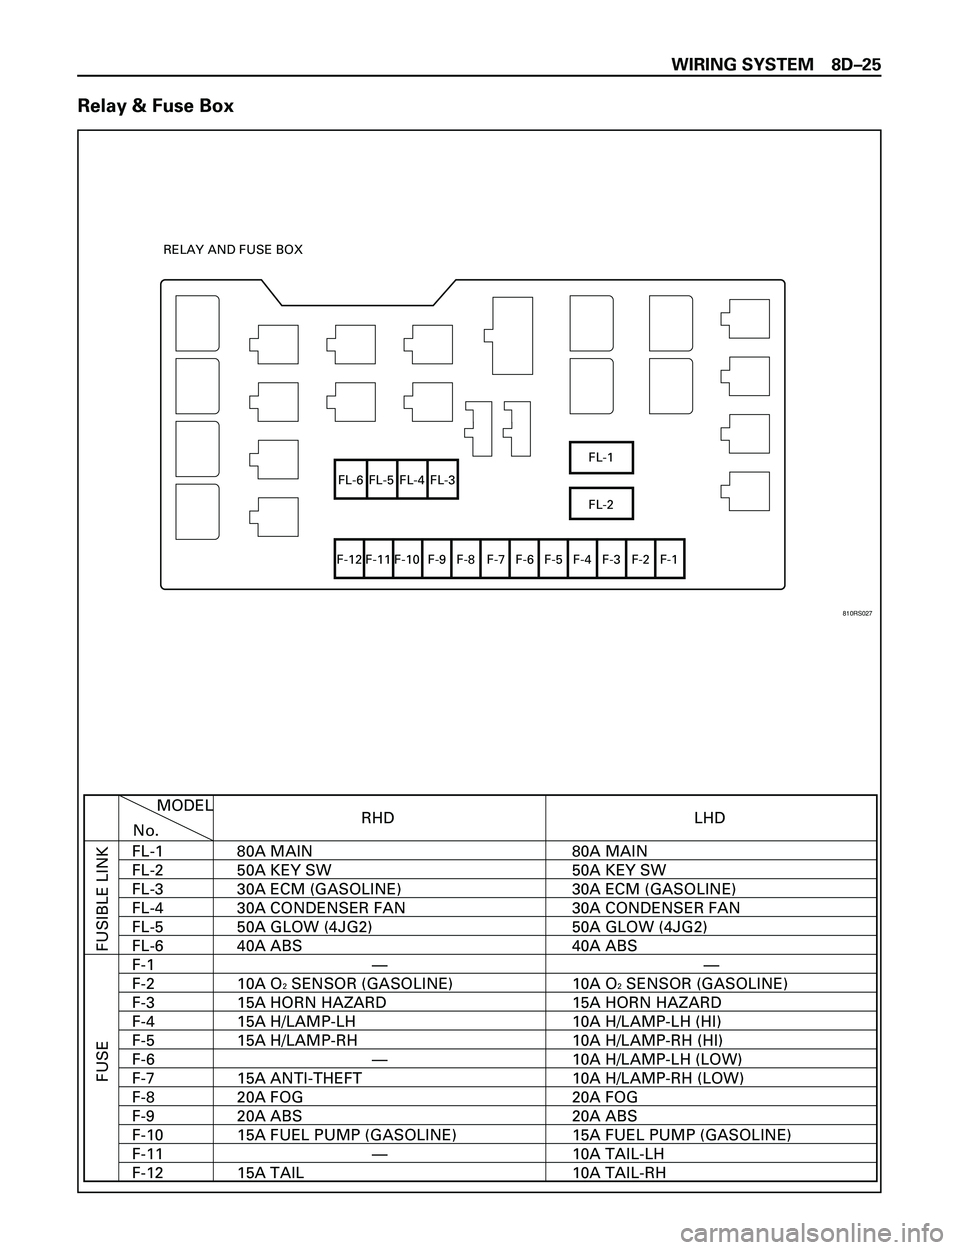 ISUZU TROOPER 1998  Service User Guide WIRING SYSTEM 8DÐ25
Relay & Fuse Box
FL-1
FL-2 FL-6 FL-5 FL-4 FL-3
F-12 F-11 F-10 F-9 F-8 F-7 F-6 F-5 F-4 F-3 F-2 F-1 RELAY AND FUSE BOX
RHD
FUSIBLE LINK FUSE
MODEL
No.
FL-1
FL-2
FL-3
FL-4
FL-5
FL-6
